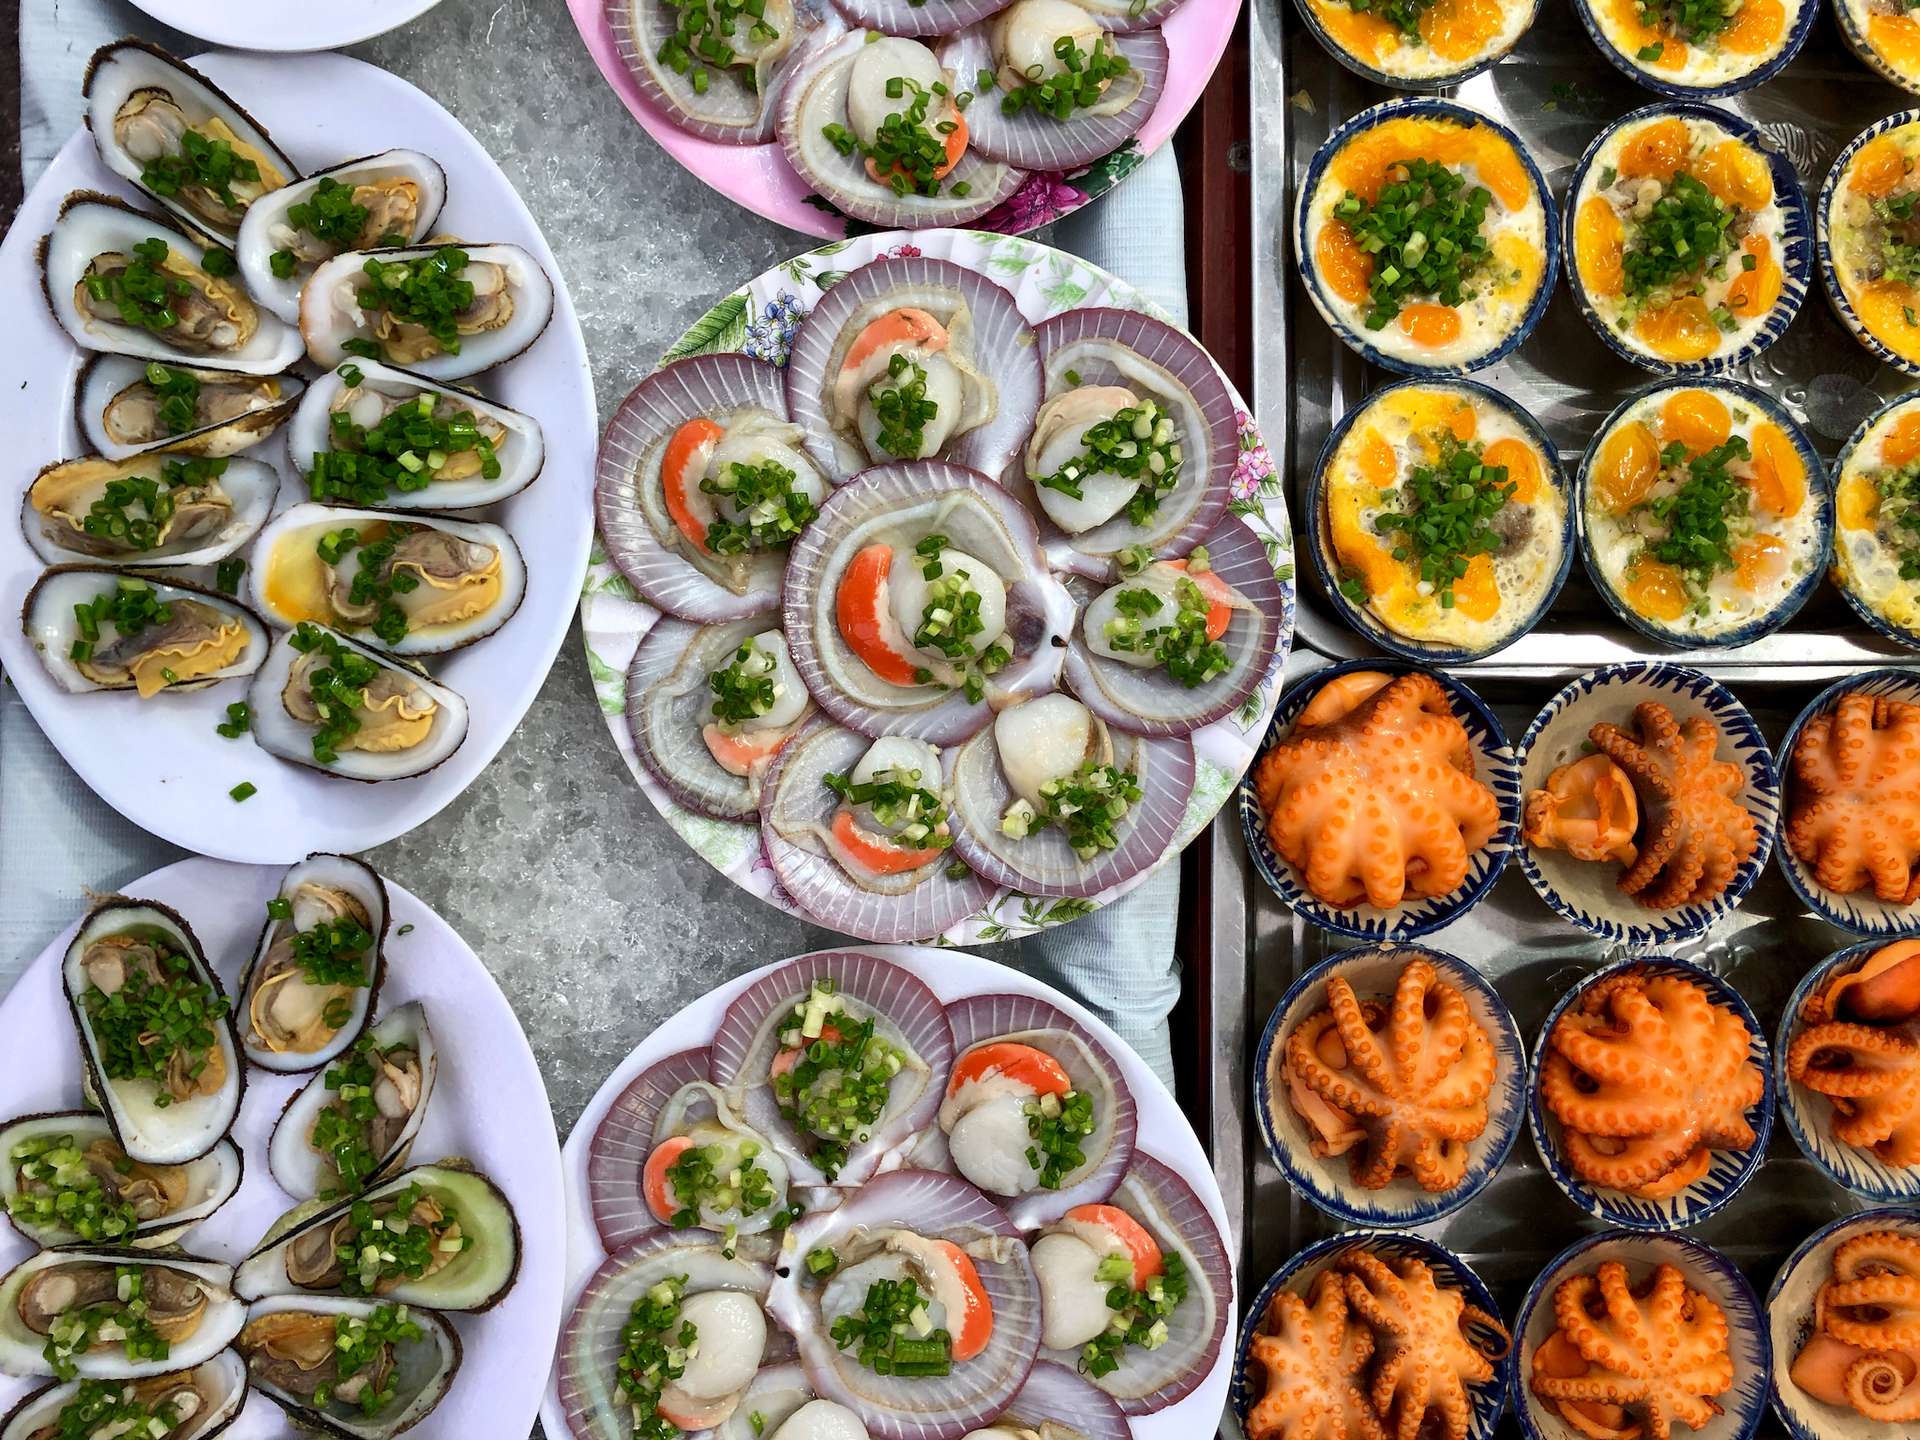 Những điểm đẹp và lý tưởng để thưởng thức hải sản ở Côn Đảo là gì?
